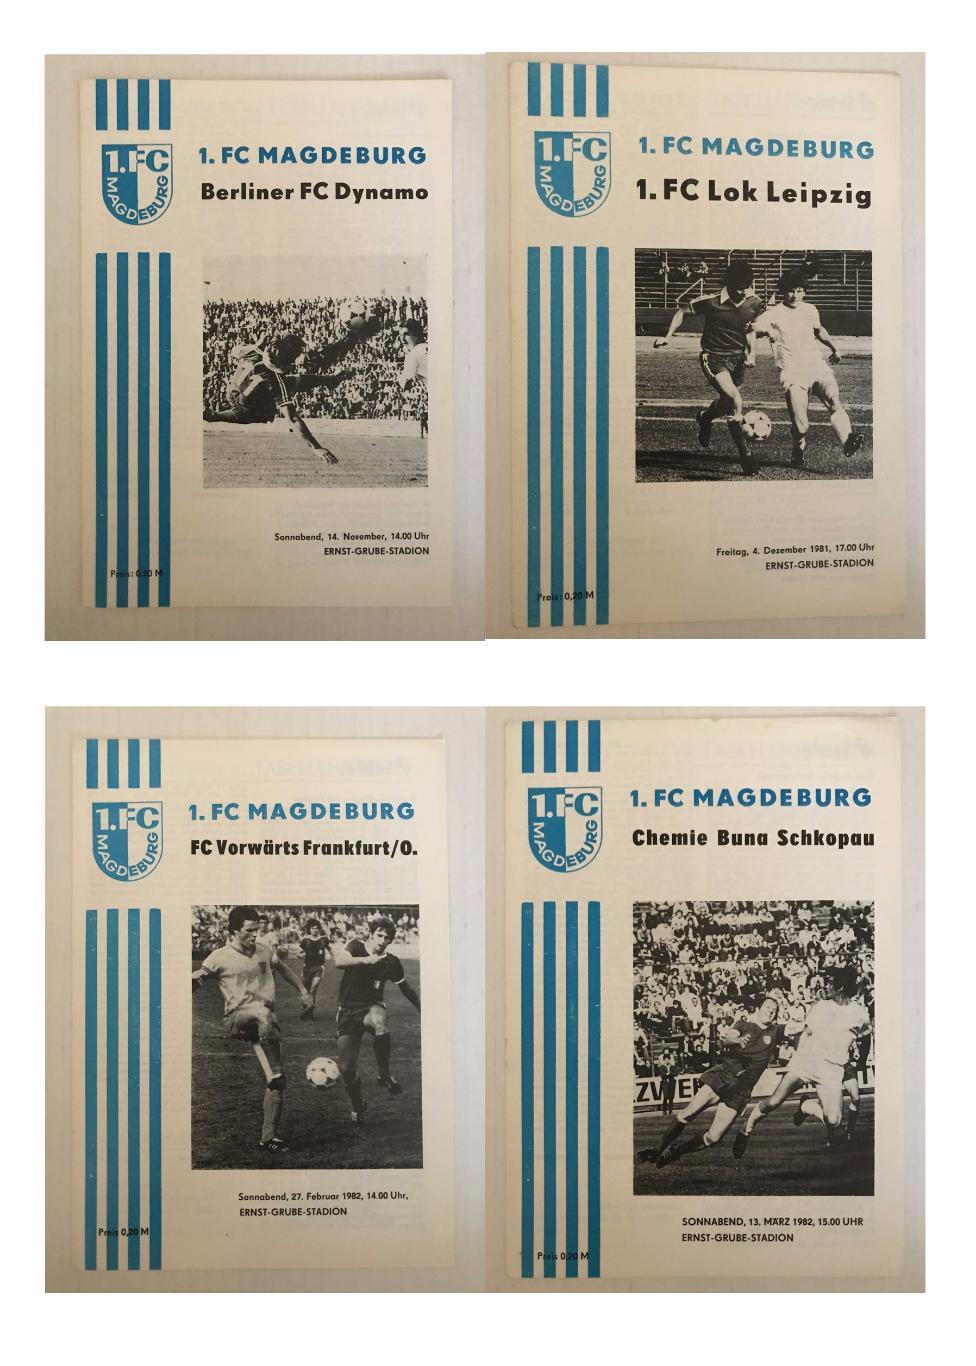 1.ФК Магдебург Оберлига ГДР 1981/82 домашний комплект 1